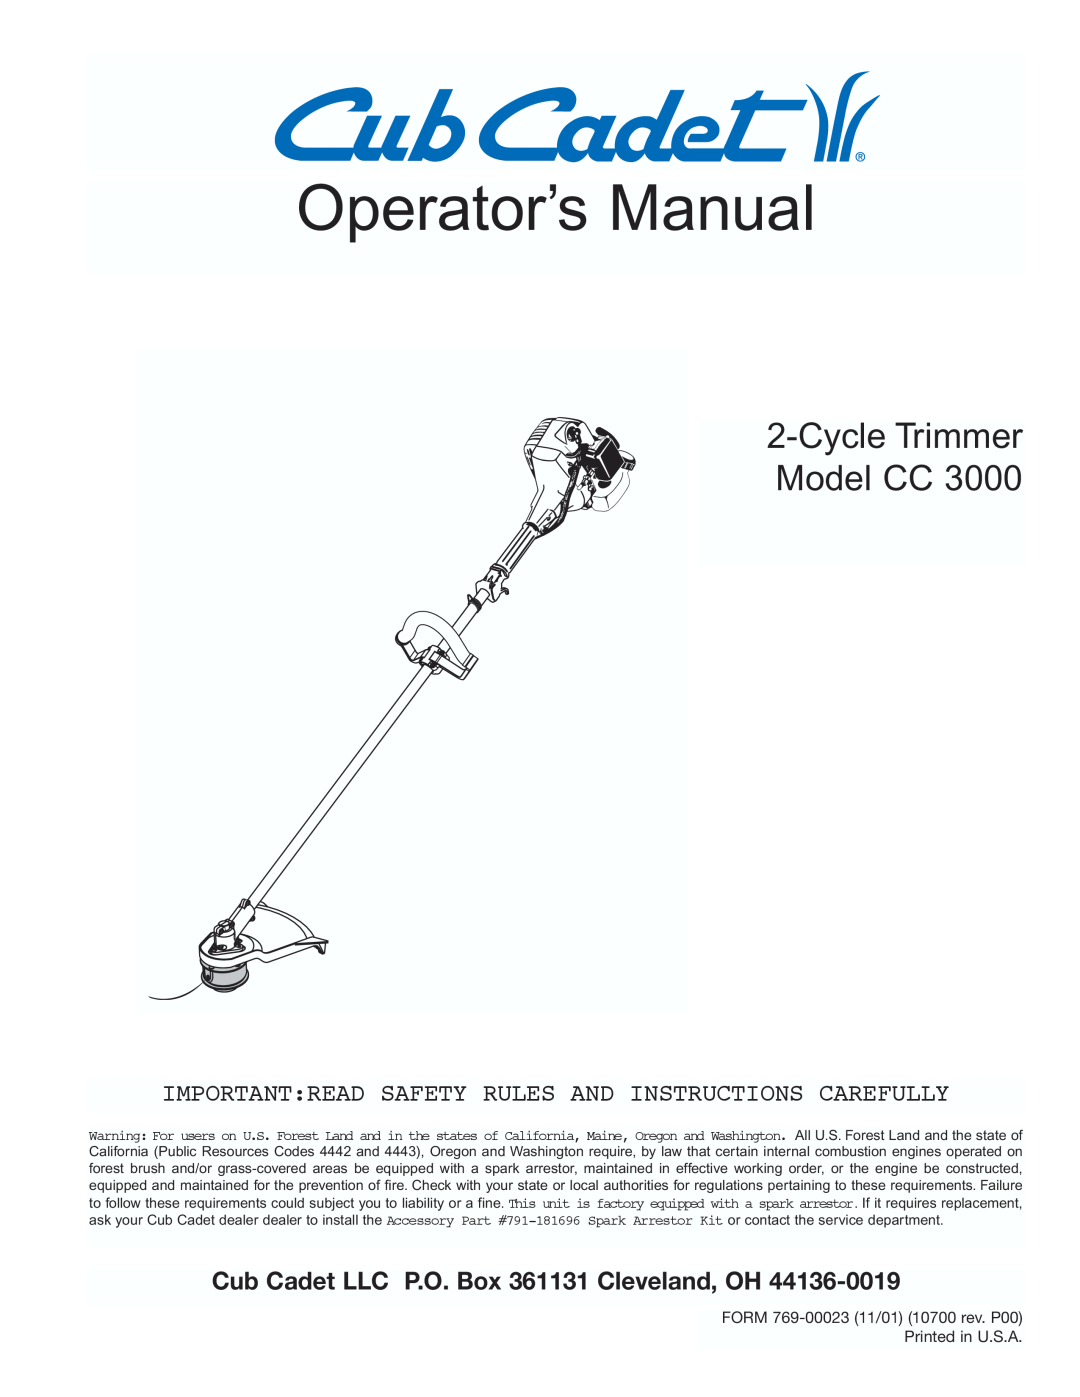 Cub Cadet CC3000 manual Operator’s Manual, CycleTrimmer Model CC, Cub Cadet LLC P.O. Box 361131 Cleveland, OH 